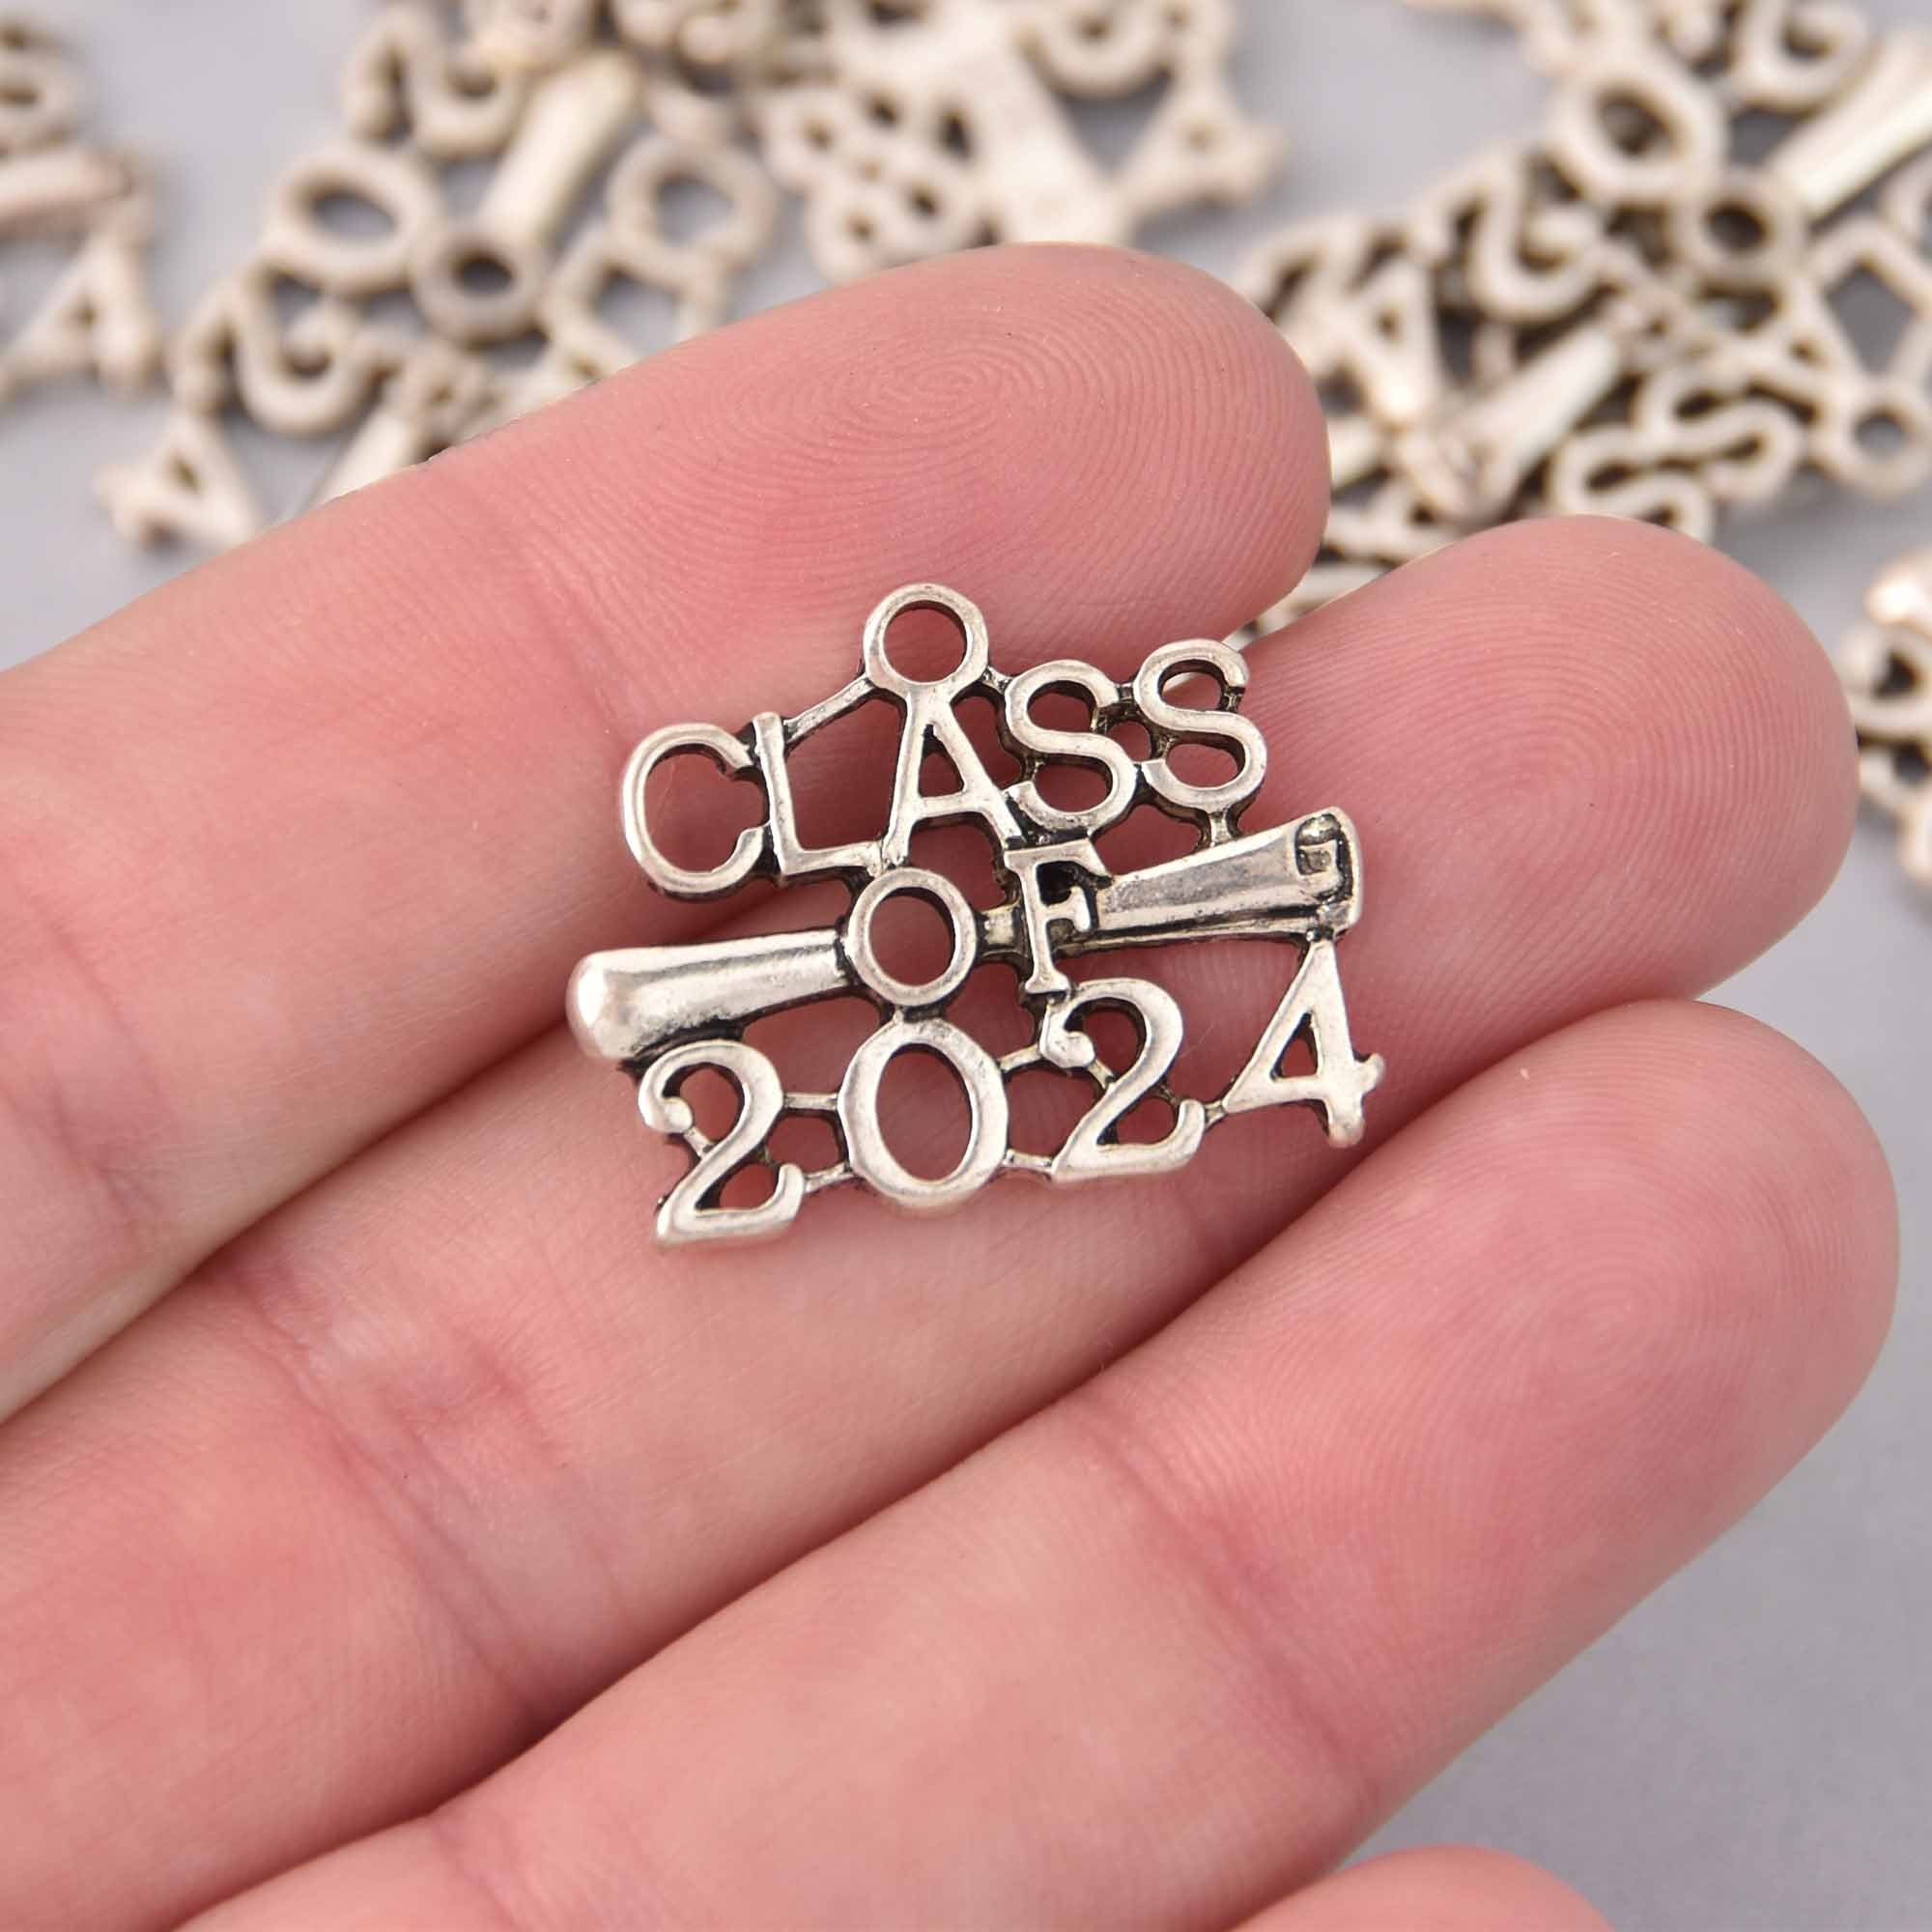  2024 Graduation Tassel 2 Pcs, 2024 Tassel Charm, 2024 Tassel  Graduation 2 Pcs, Tassel For Graduation Cap 2024, Purple And White Tassel  2024